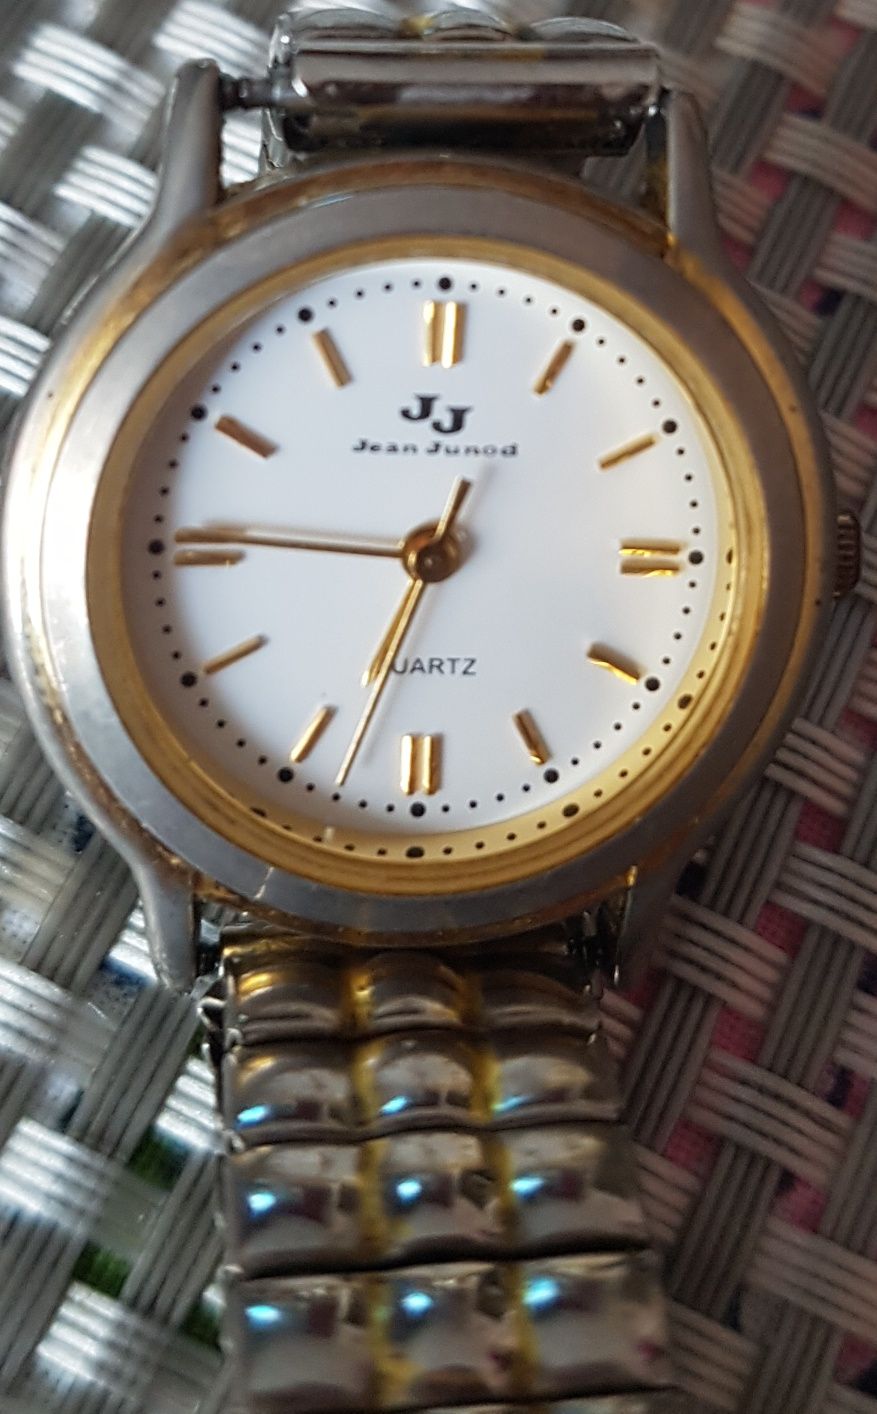 Женские часы Jean Juned